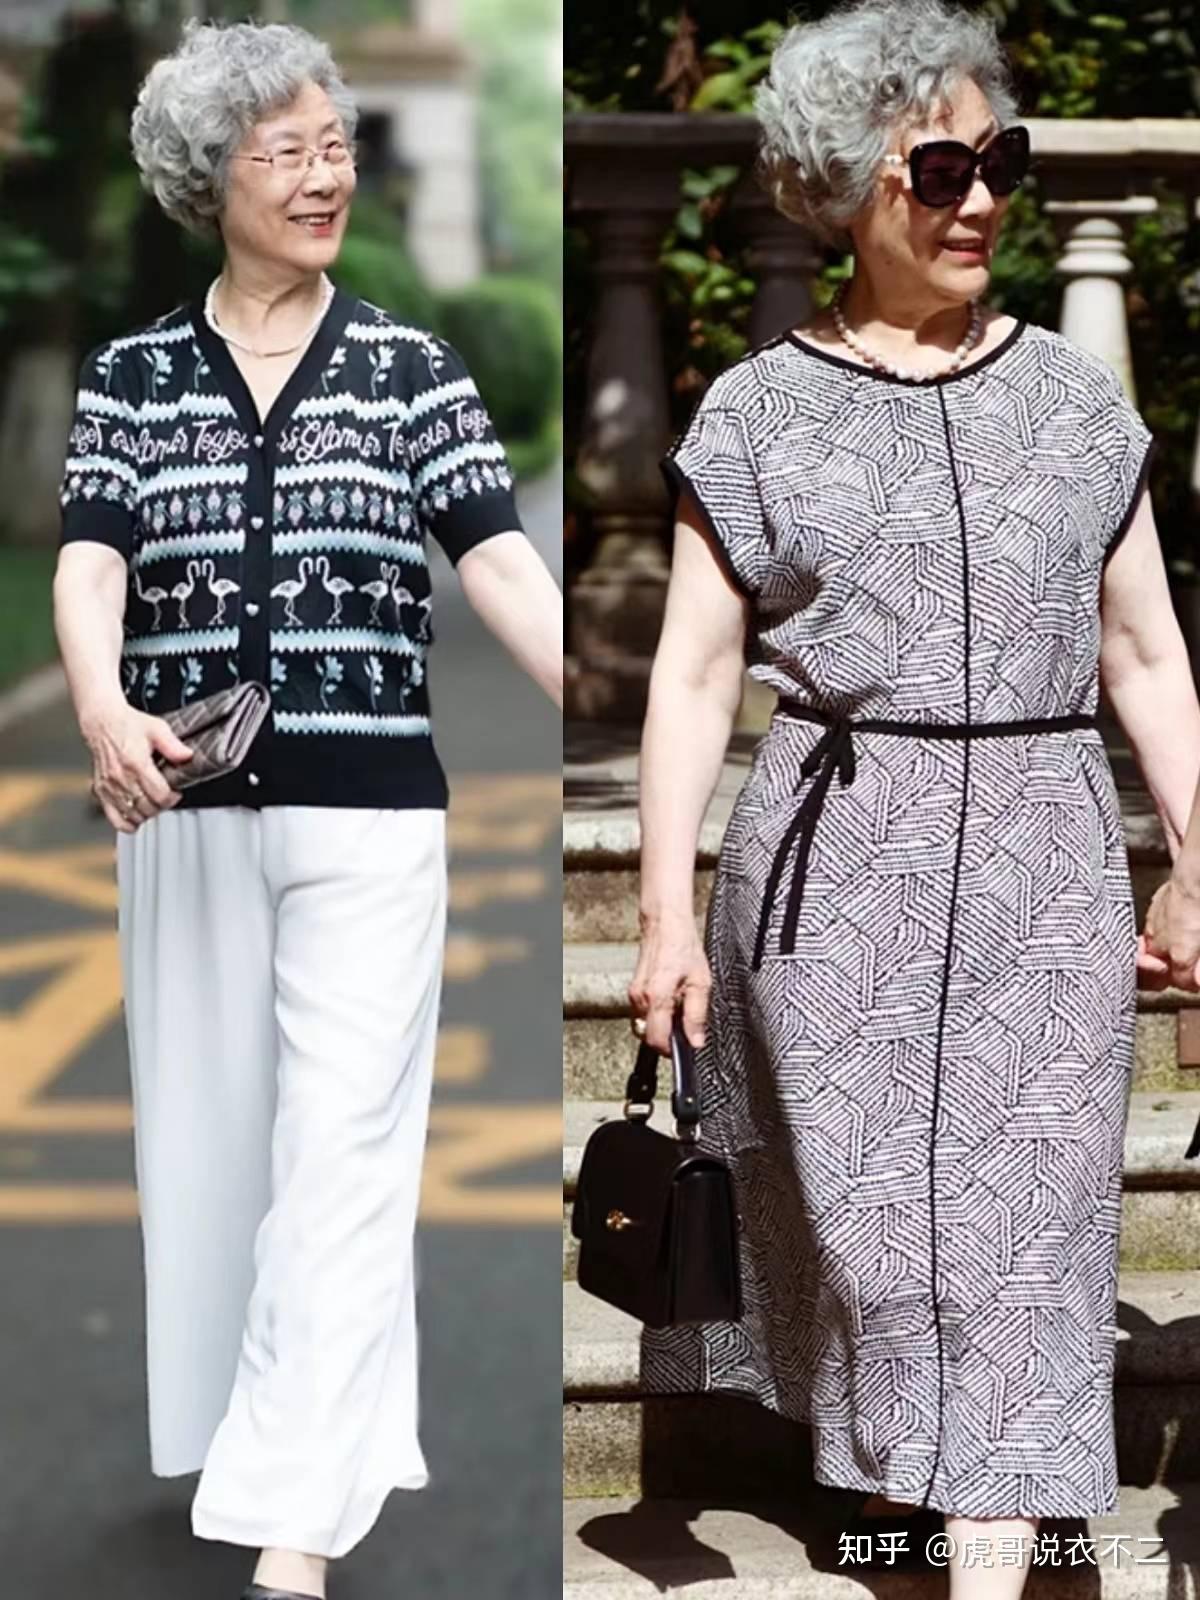 年龄只是个数字，这些60岁的时髦奶奶，用穿搭诠释爱美与年龄无关 - 哔哩哔哩